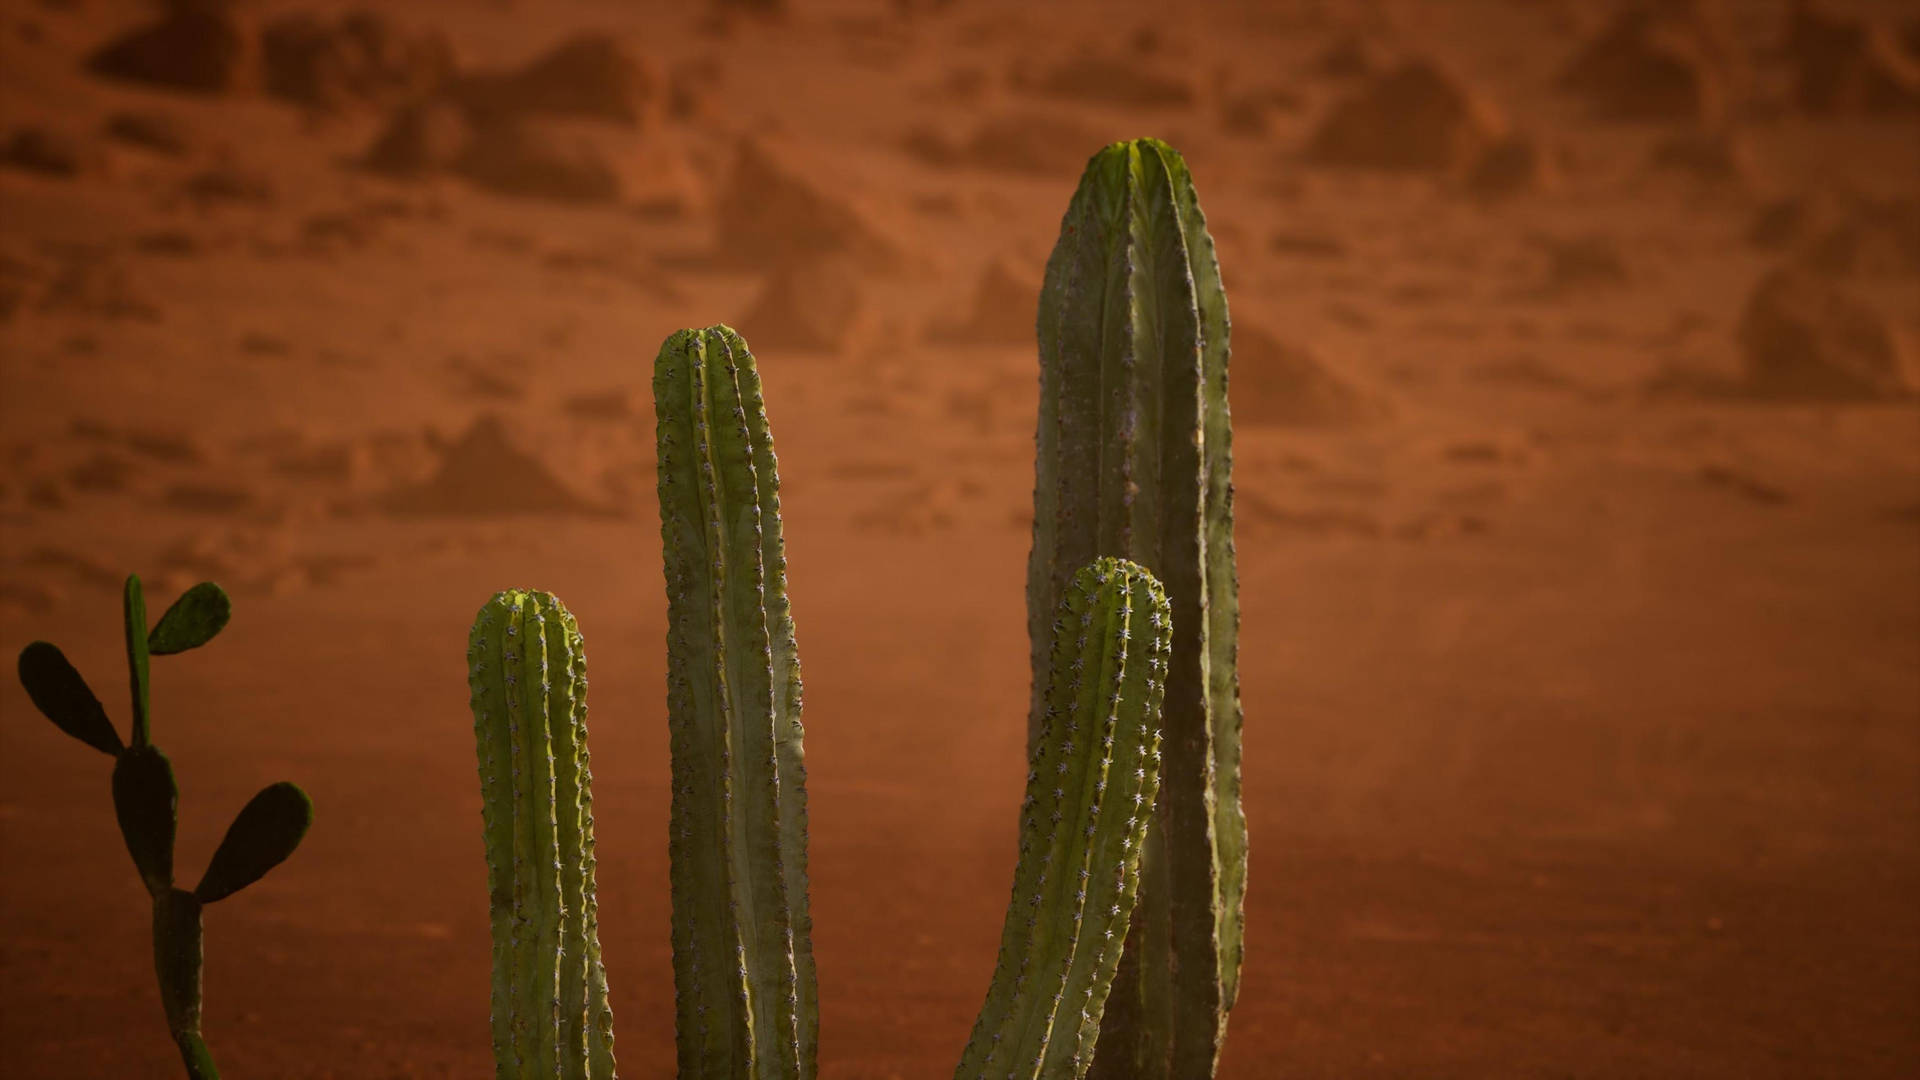 Cactus Plant In Arizona Desert